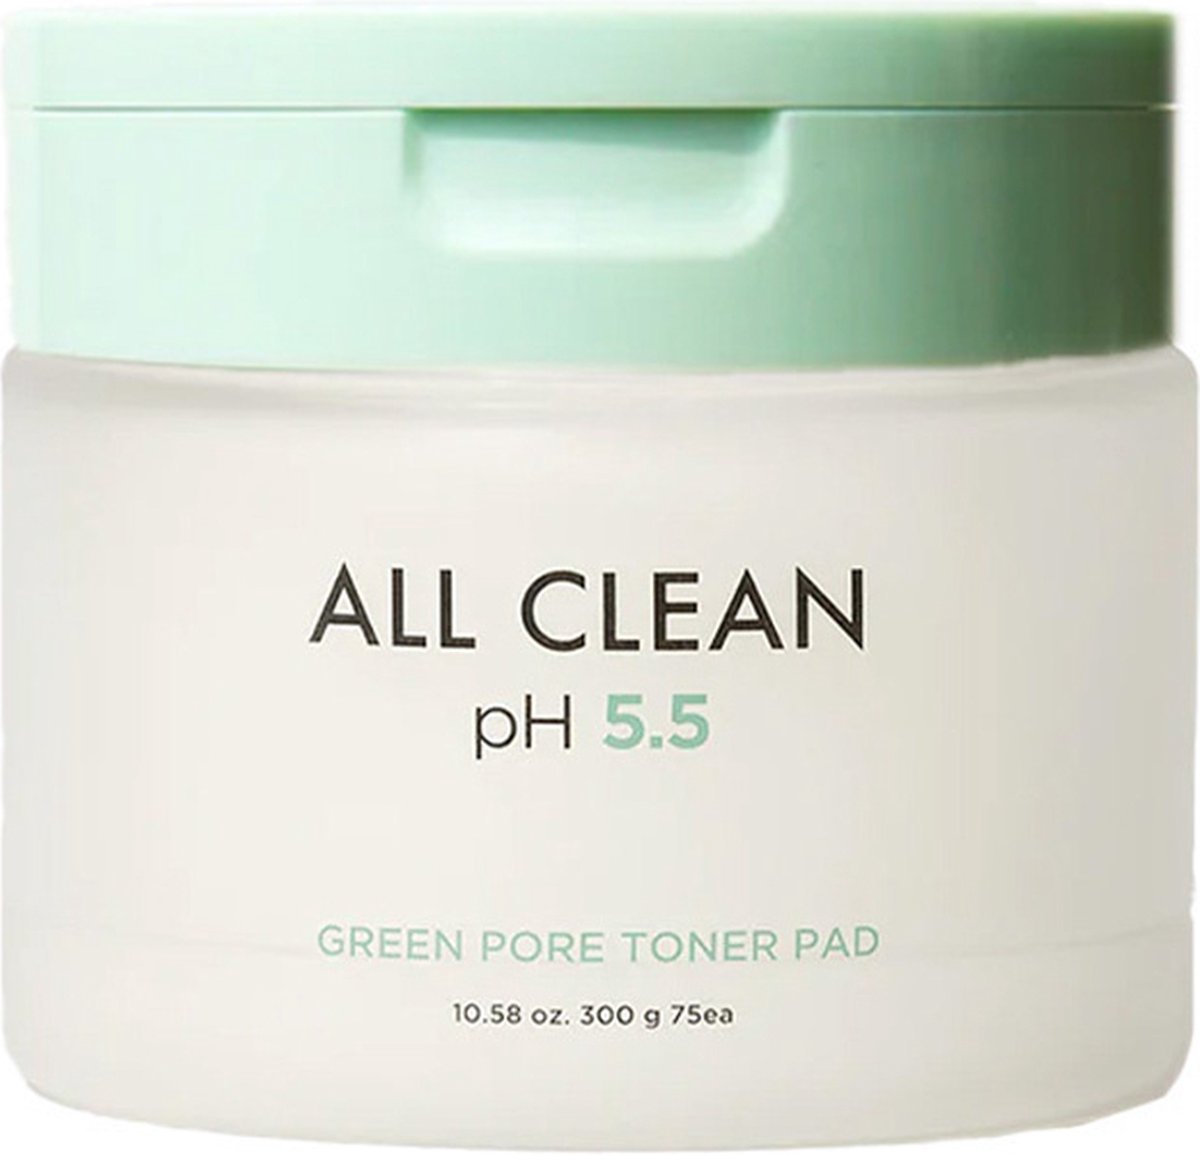 Heimish All Clean Green Pore Toner Pad 75 ea 75 st